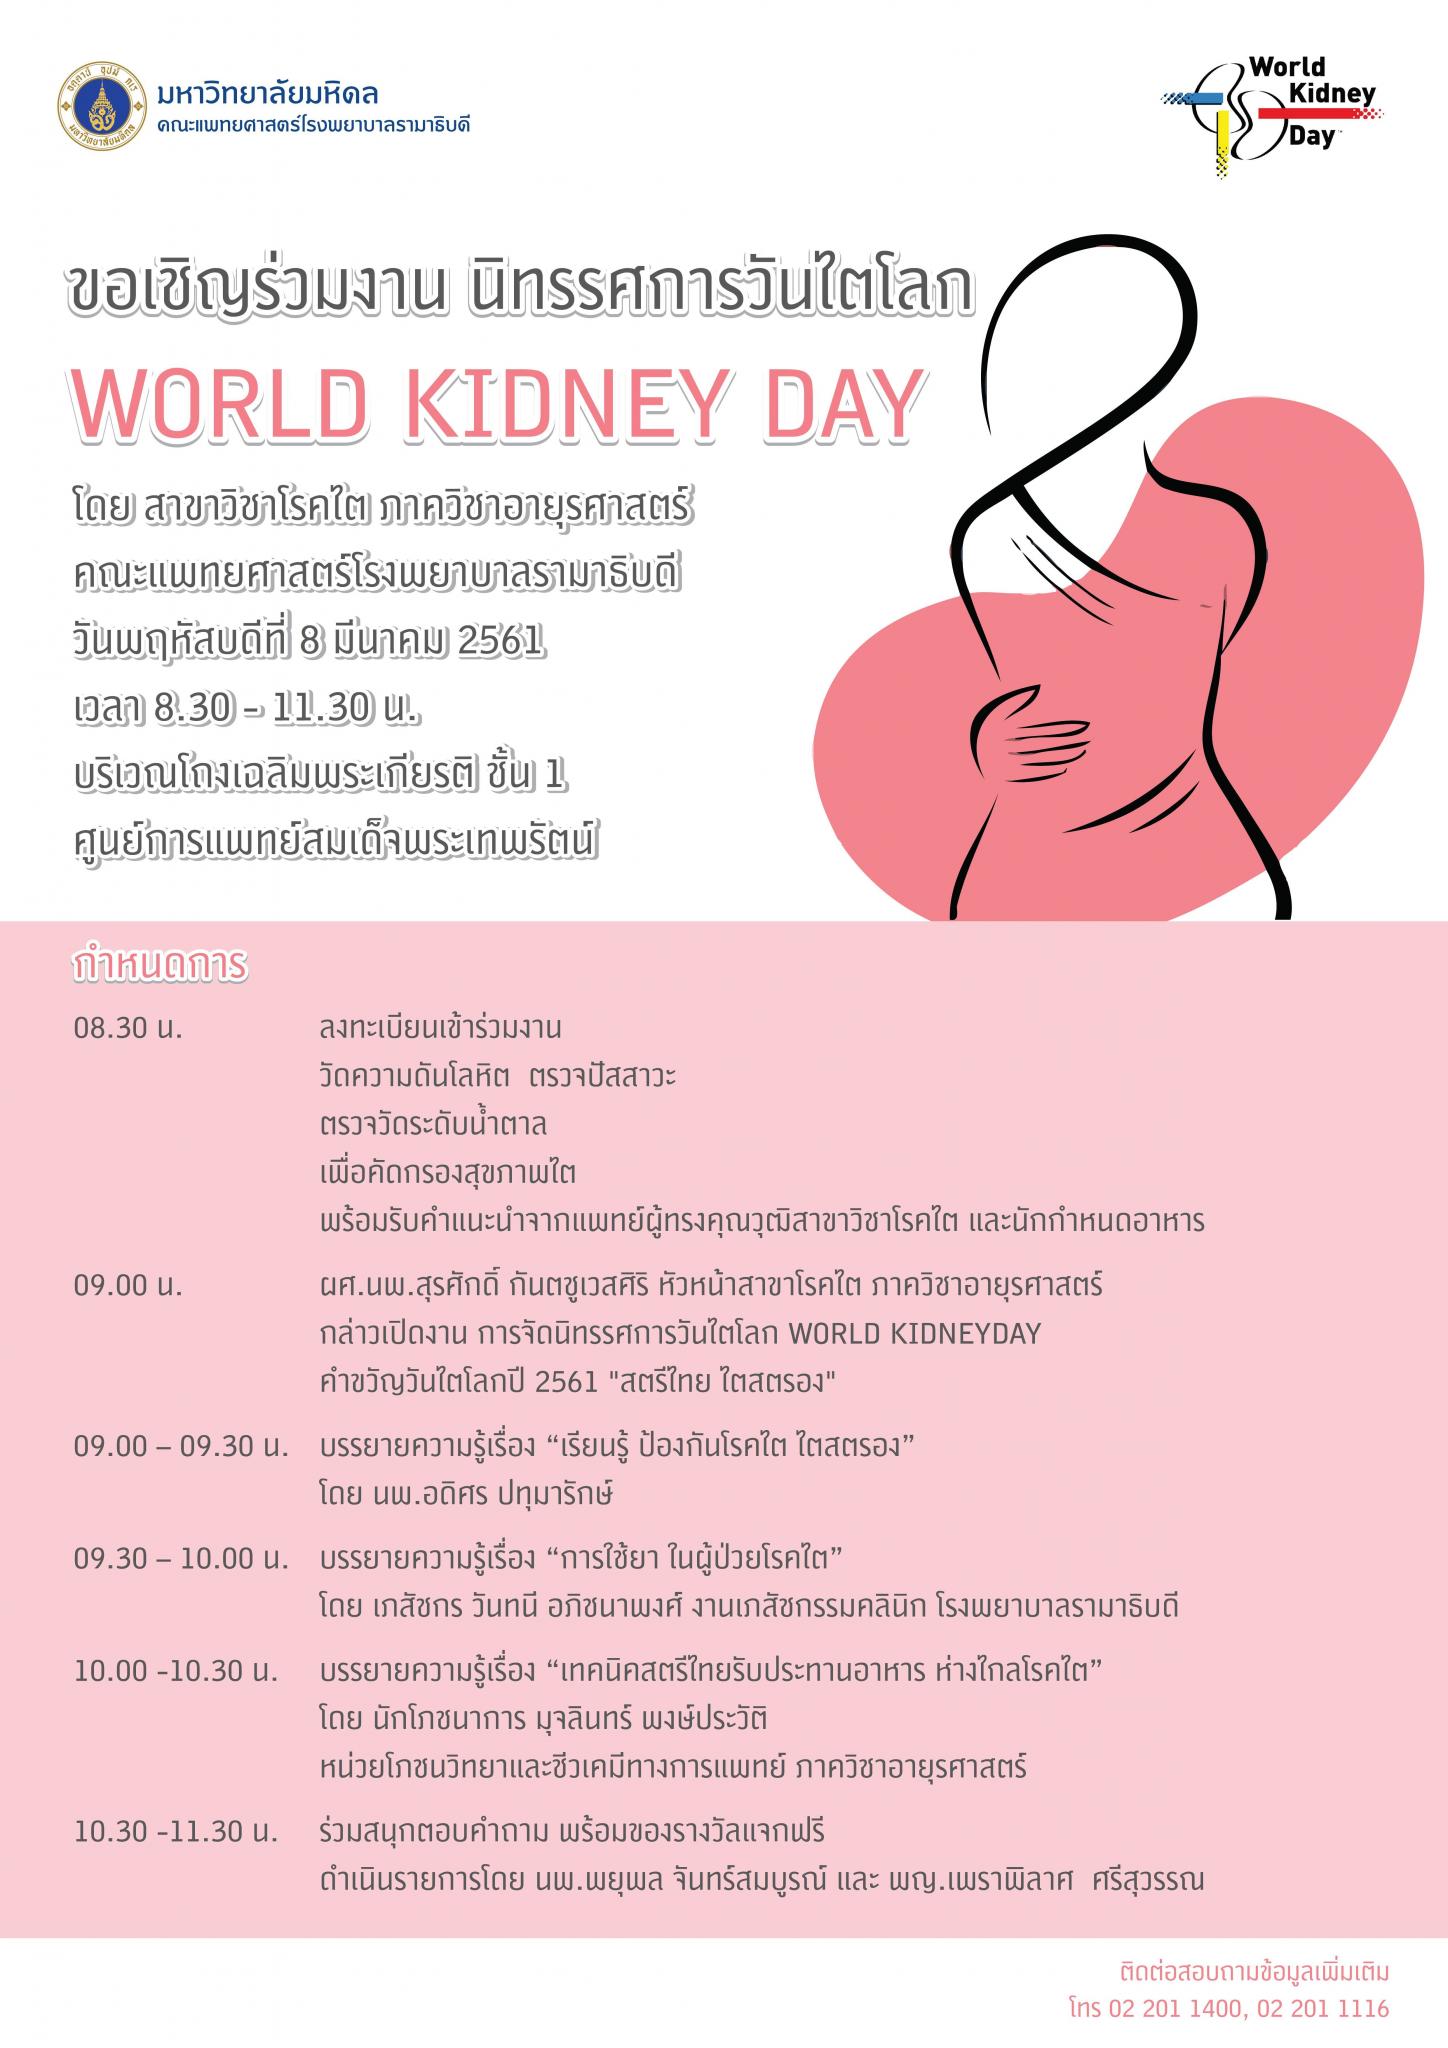 ขอเชิญร่วมงานนิทรรศการวันไตโลก World Kidney Day 